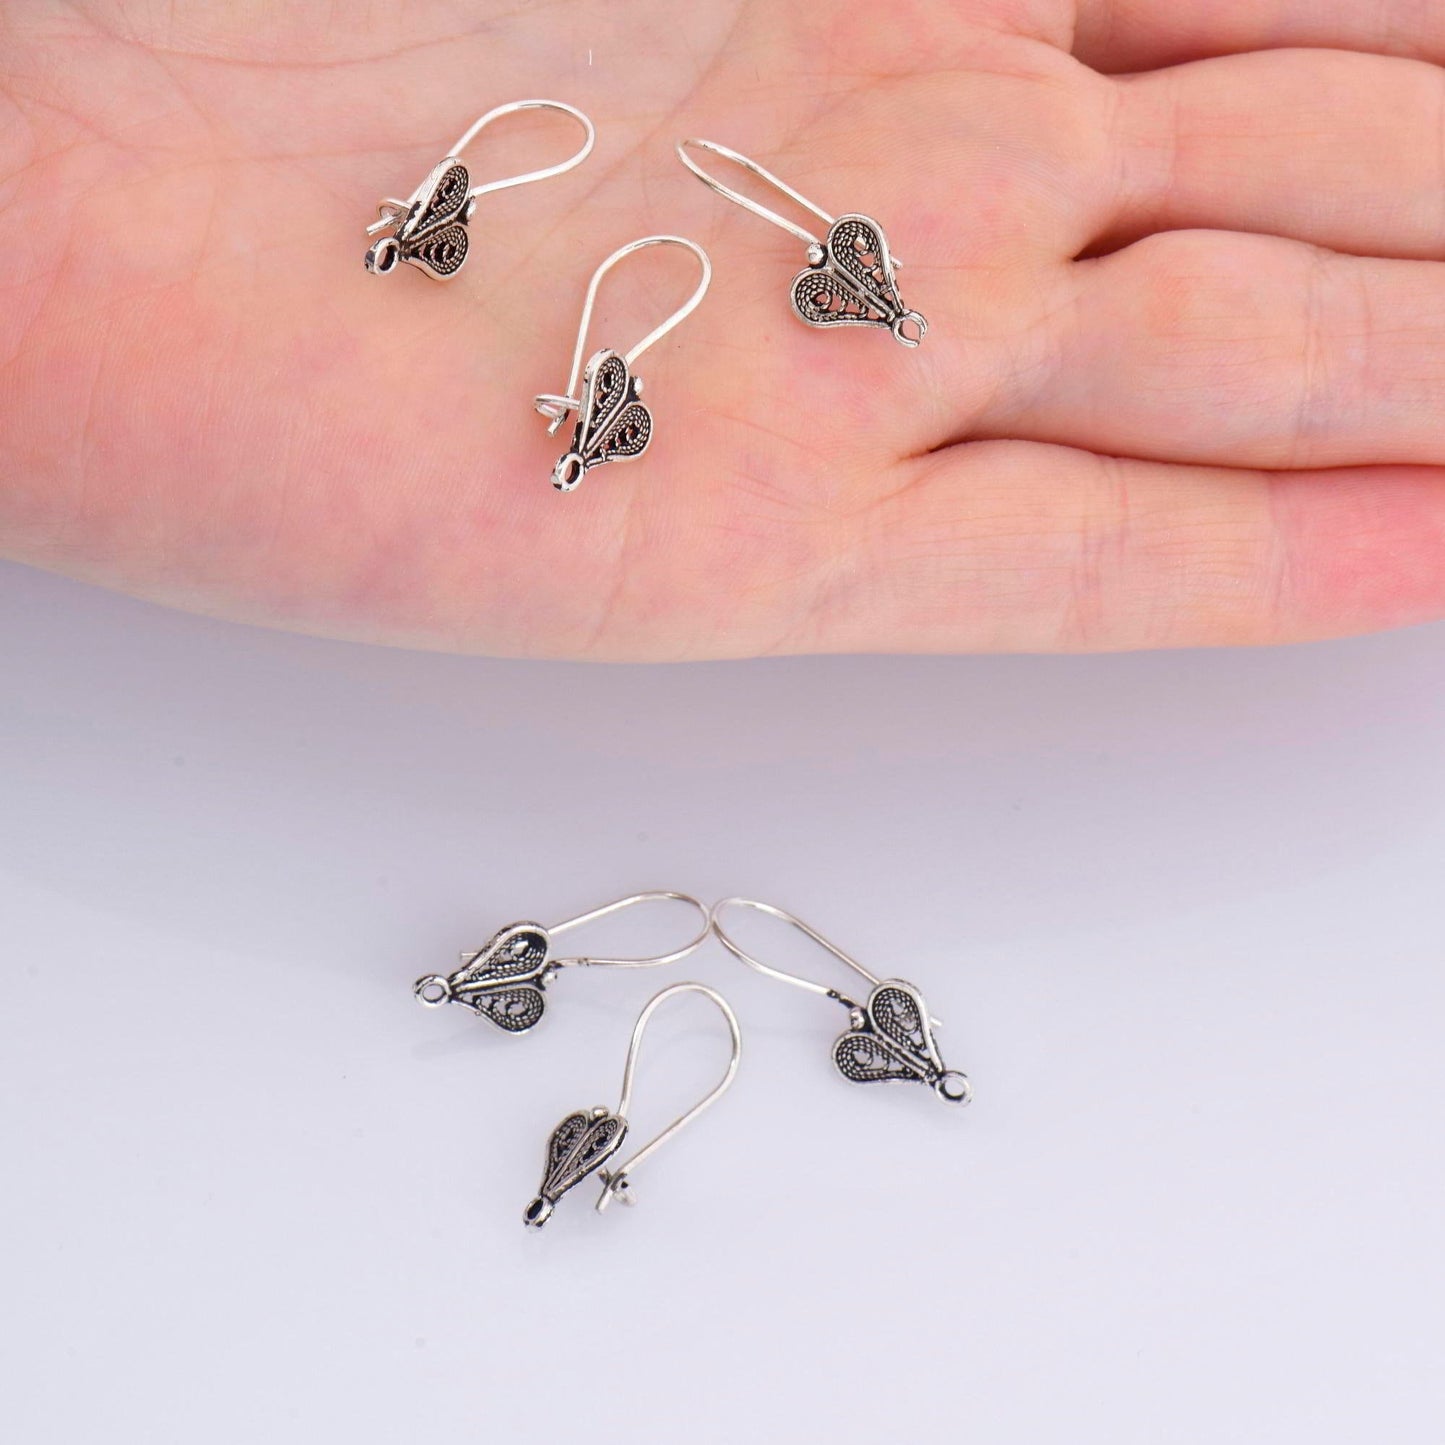 24K Gold Vermeil and 925 Silver  Heart Shape Ear Wires, Earring Hooks, Ear Wires, Earrings Making Supply, Jewelry Findings, M46/VM46